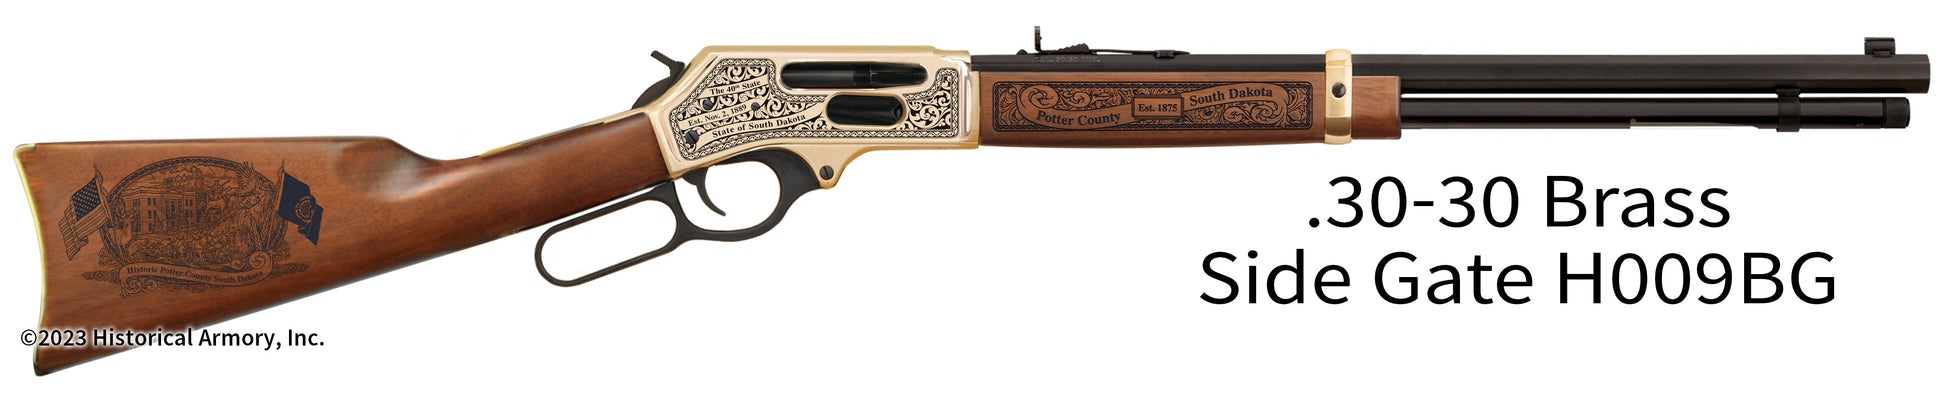 Potter County South Dakota Engraved Henry .30-30 Brass Side Gate Rifle